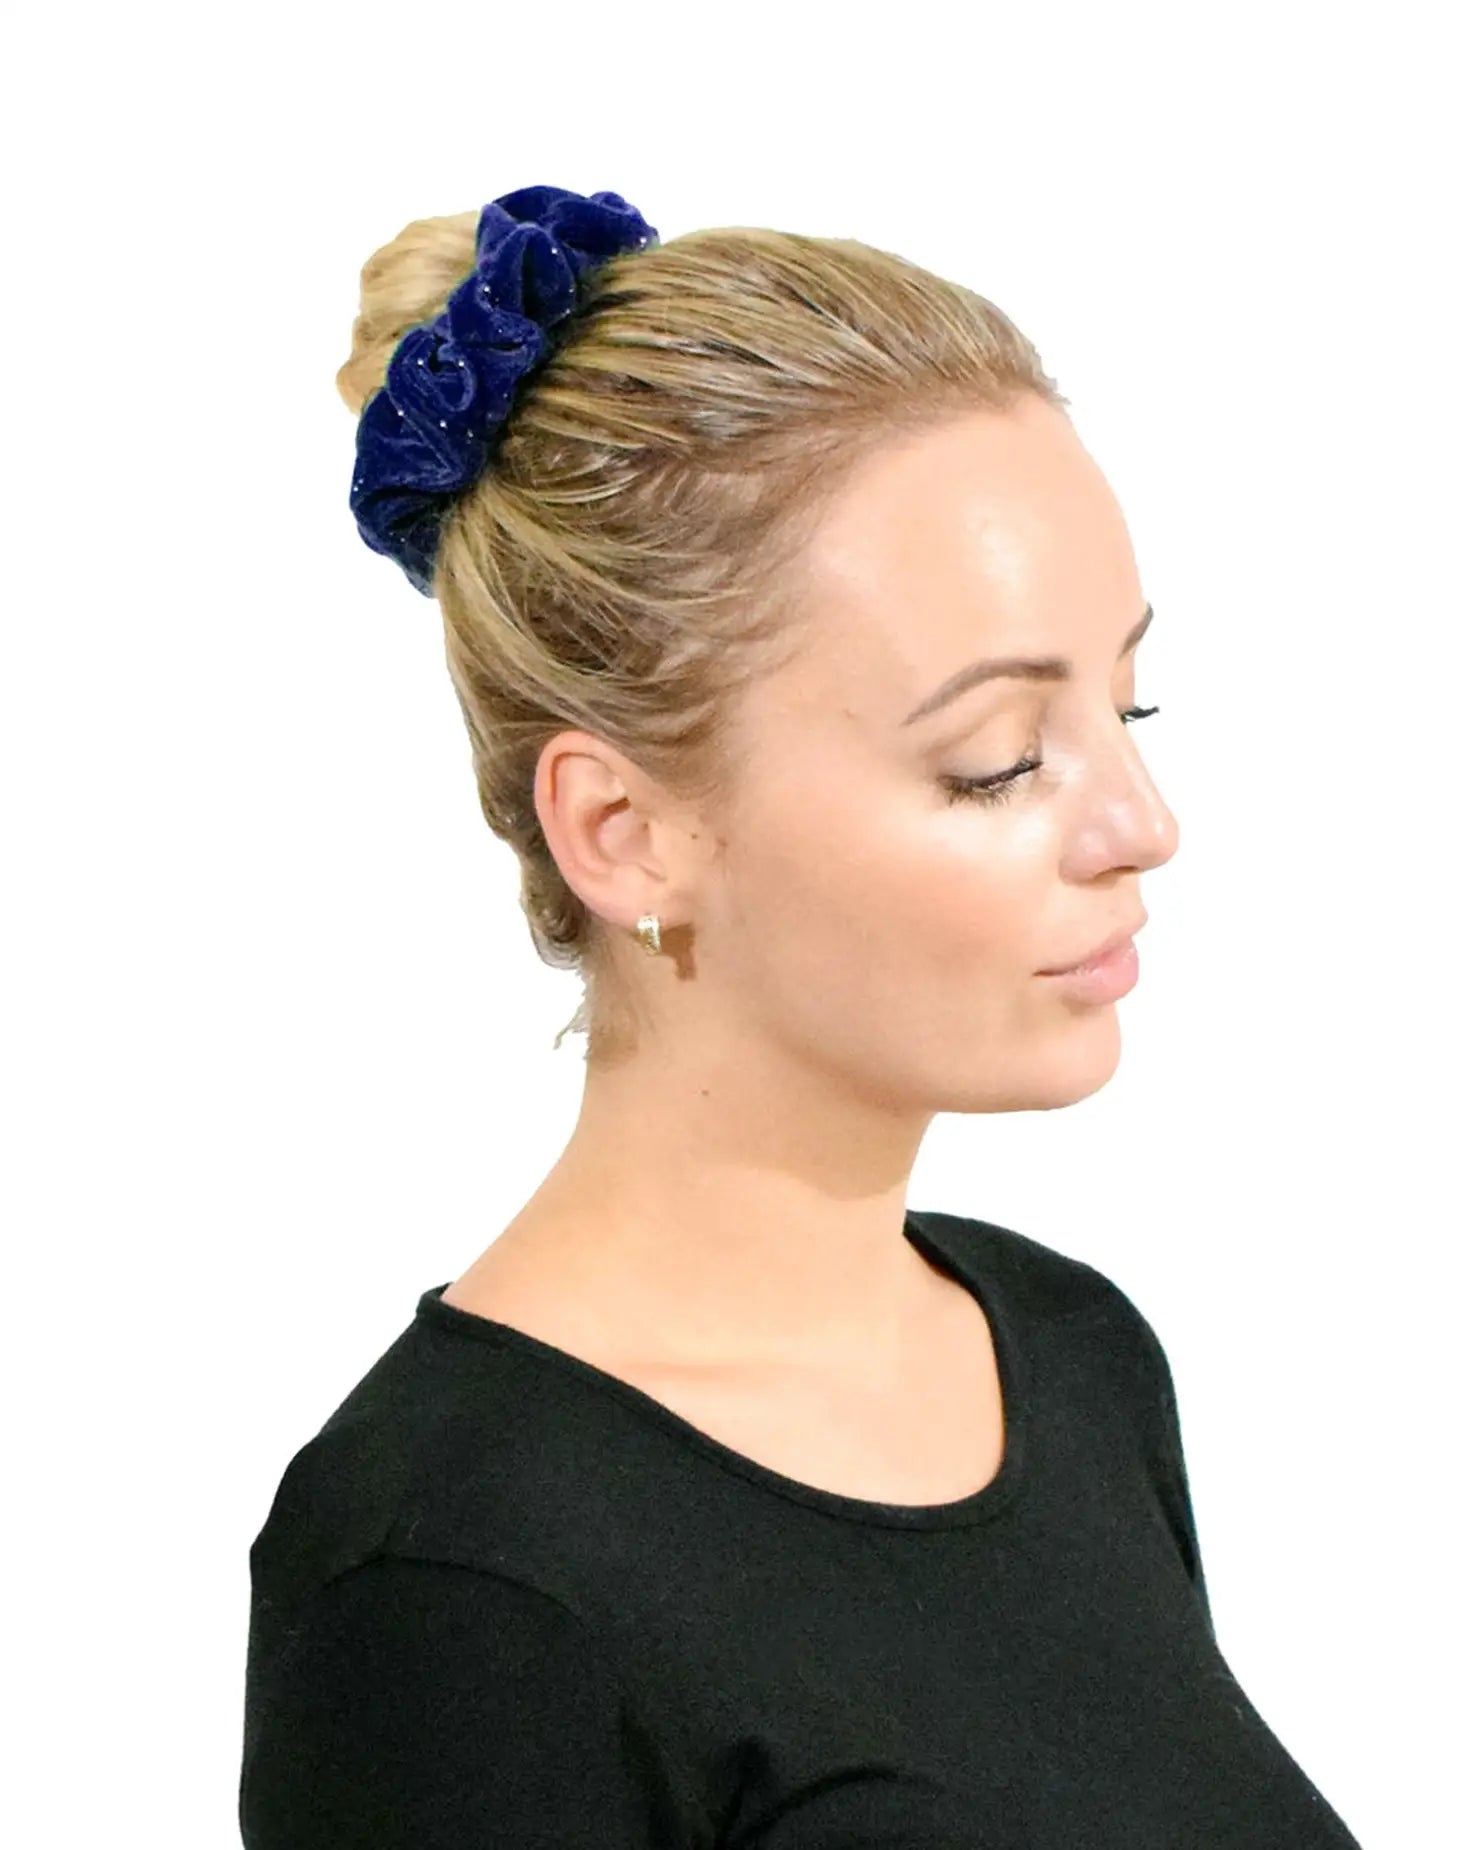 Glitter Velvet Hair Scrunchie Set: Woman with Blue Flower in Hair